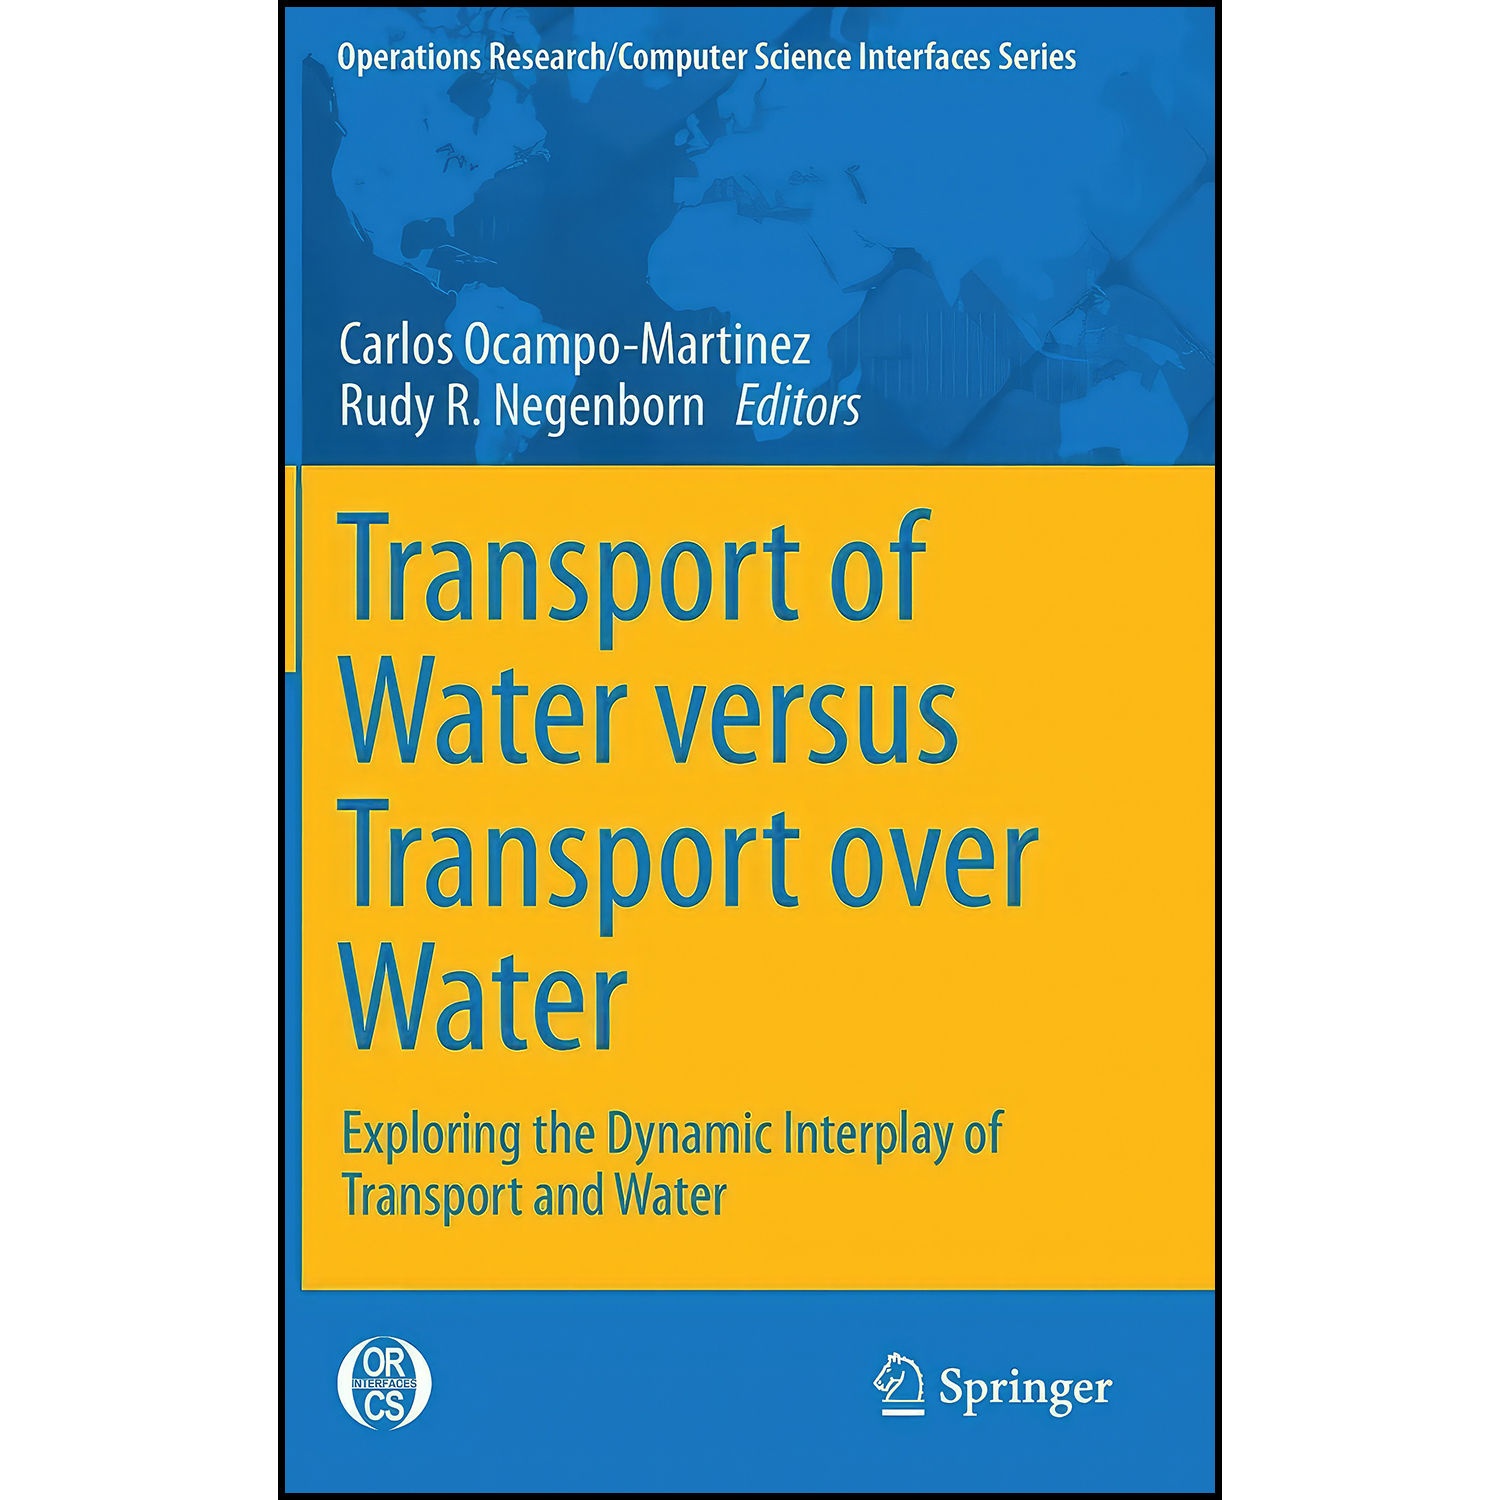 کتاب Transport of Water versus Transport over Water اثر جمعي از نويسندگان انتشارات Springer